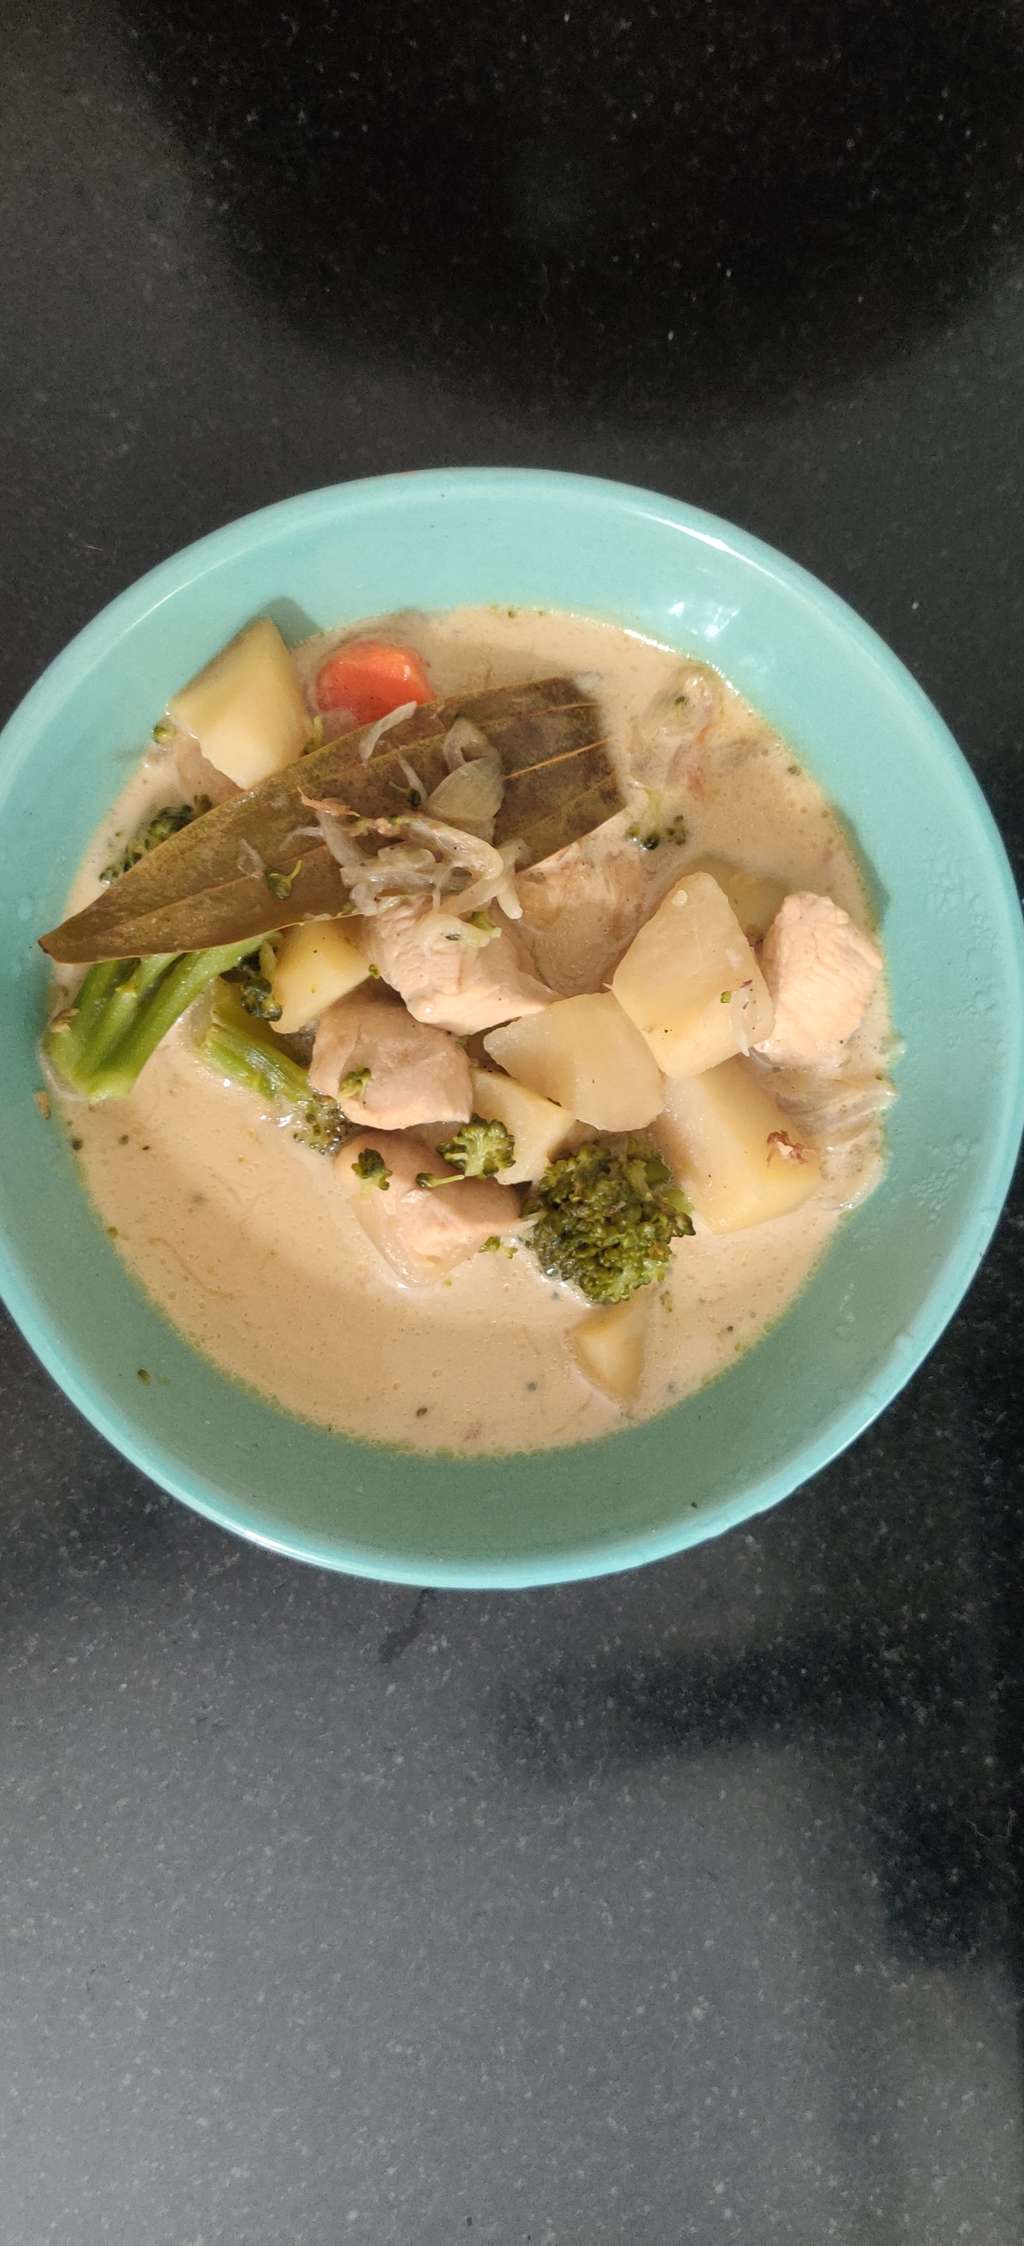 Coconut milk chicken stew